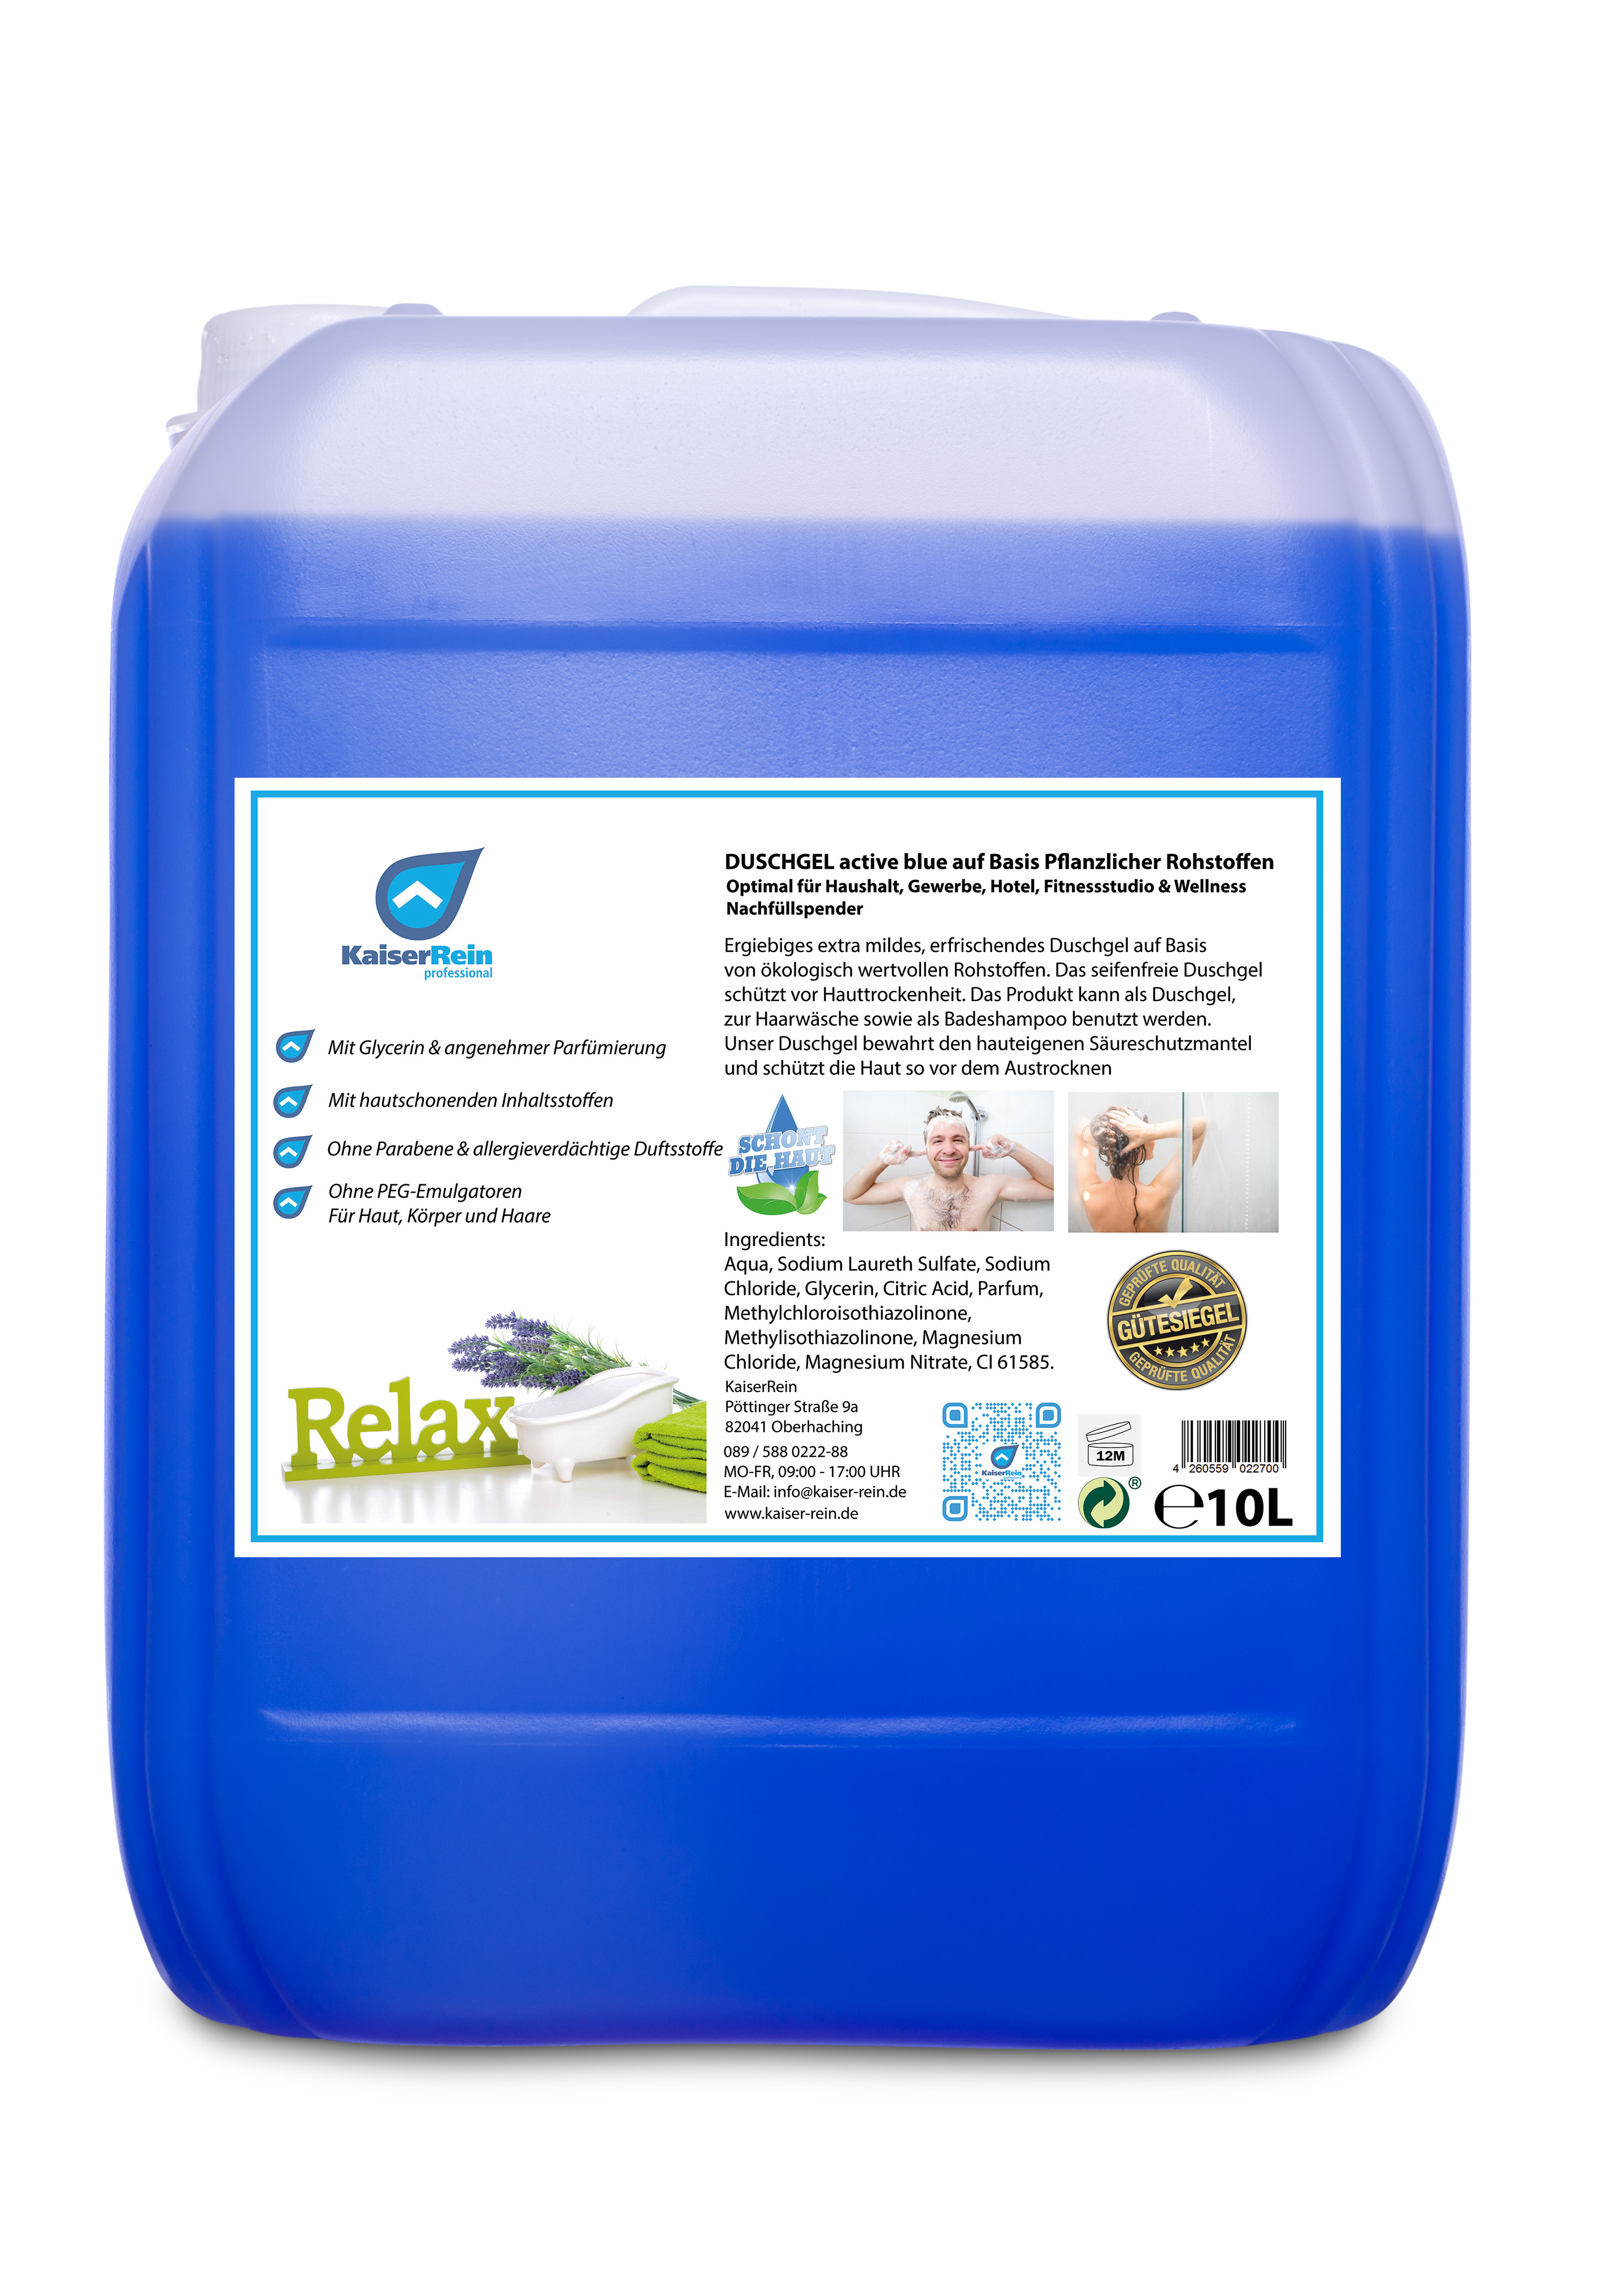 Duschgel - active blue 10 L Parabenfrei mikroplastikfrei ohne allergieverdächtige Duftsstoffe